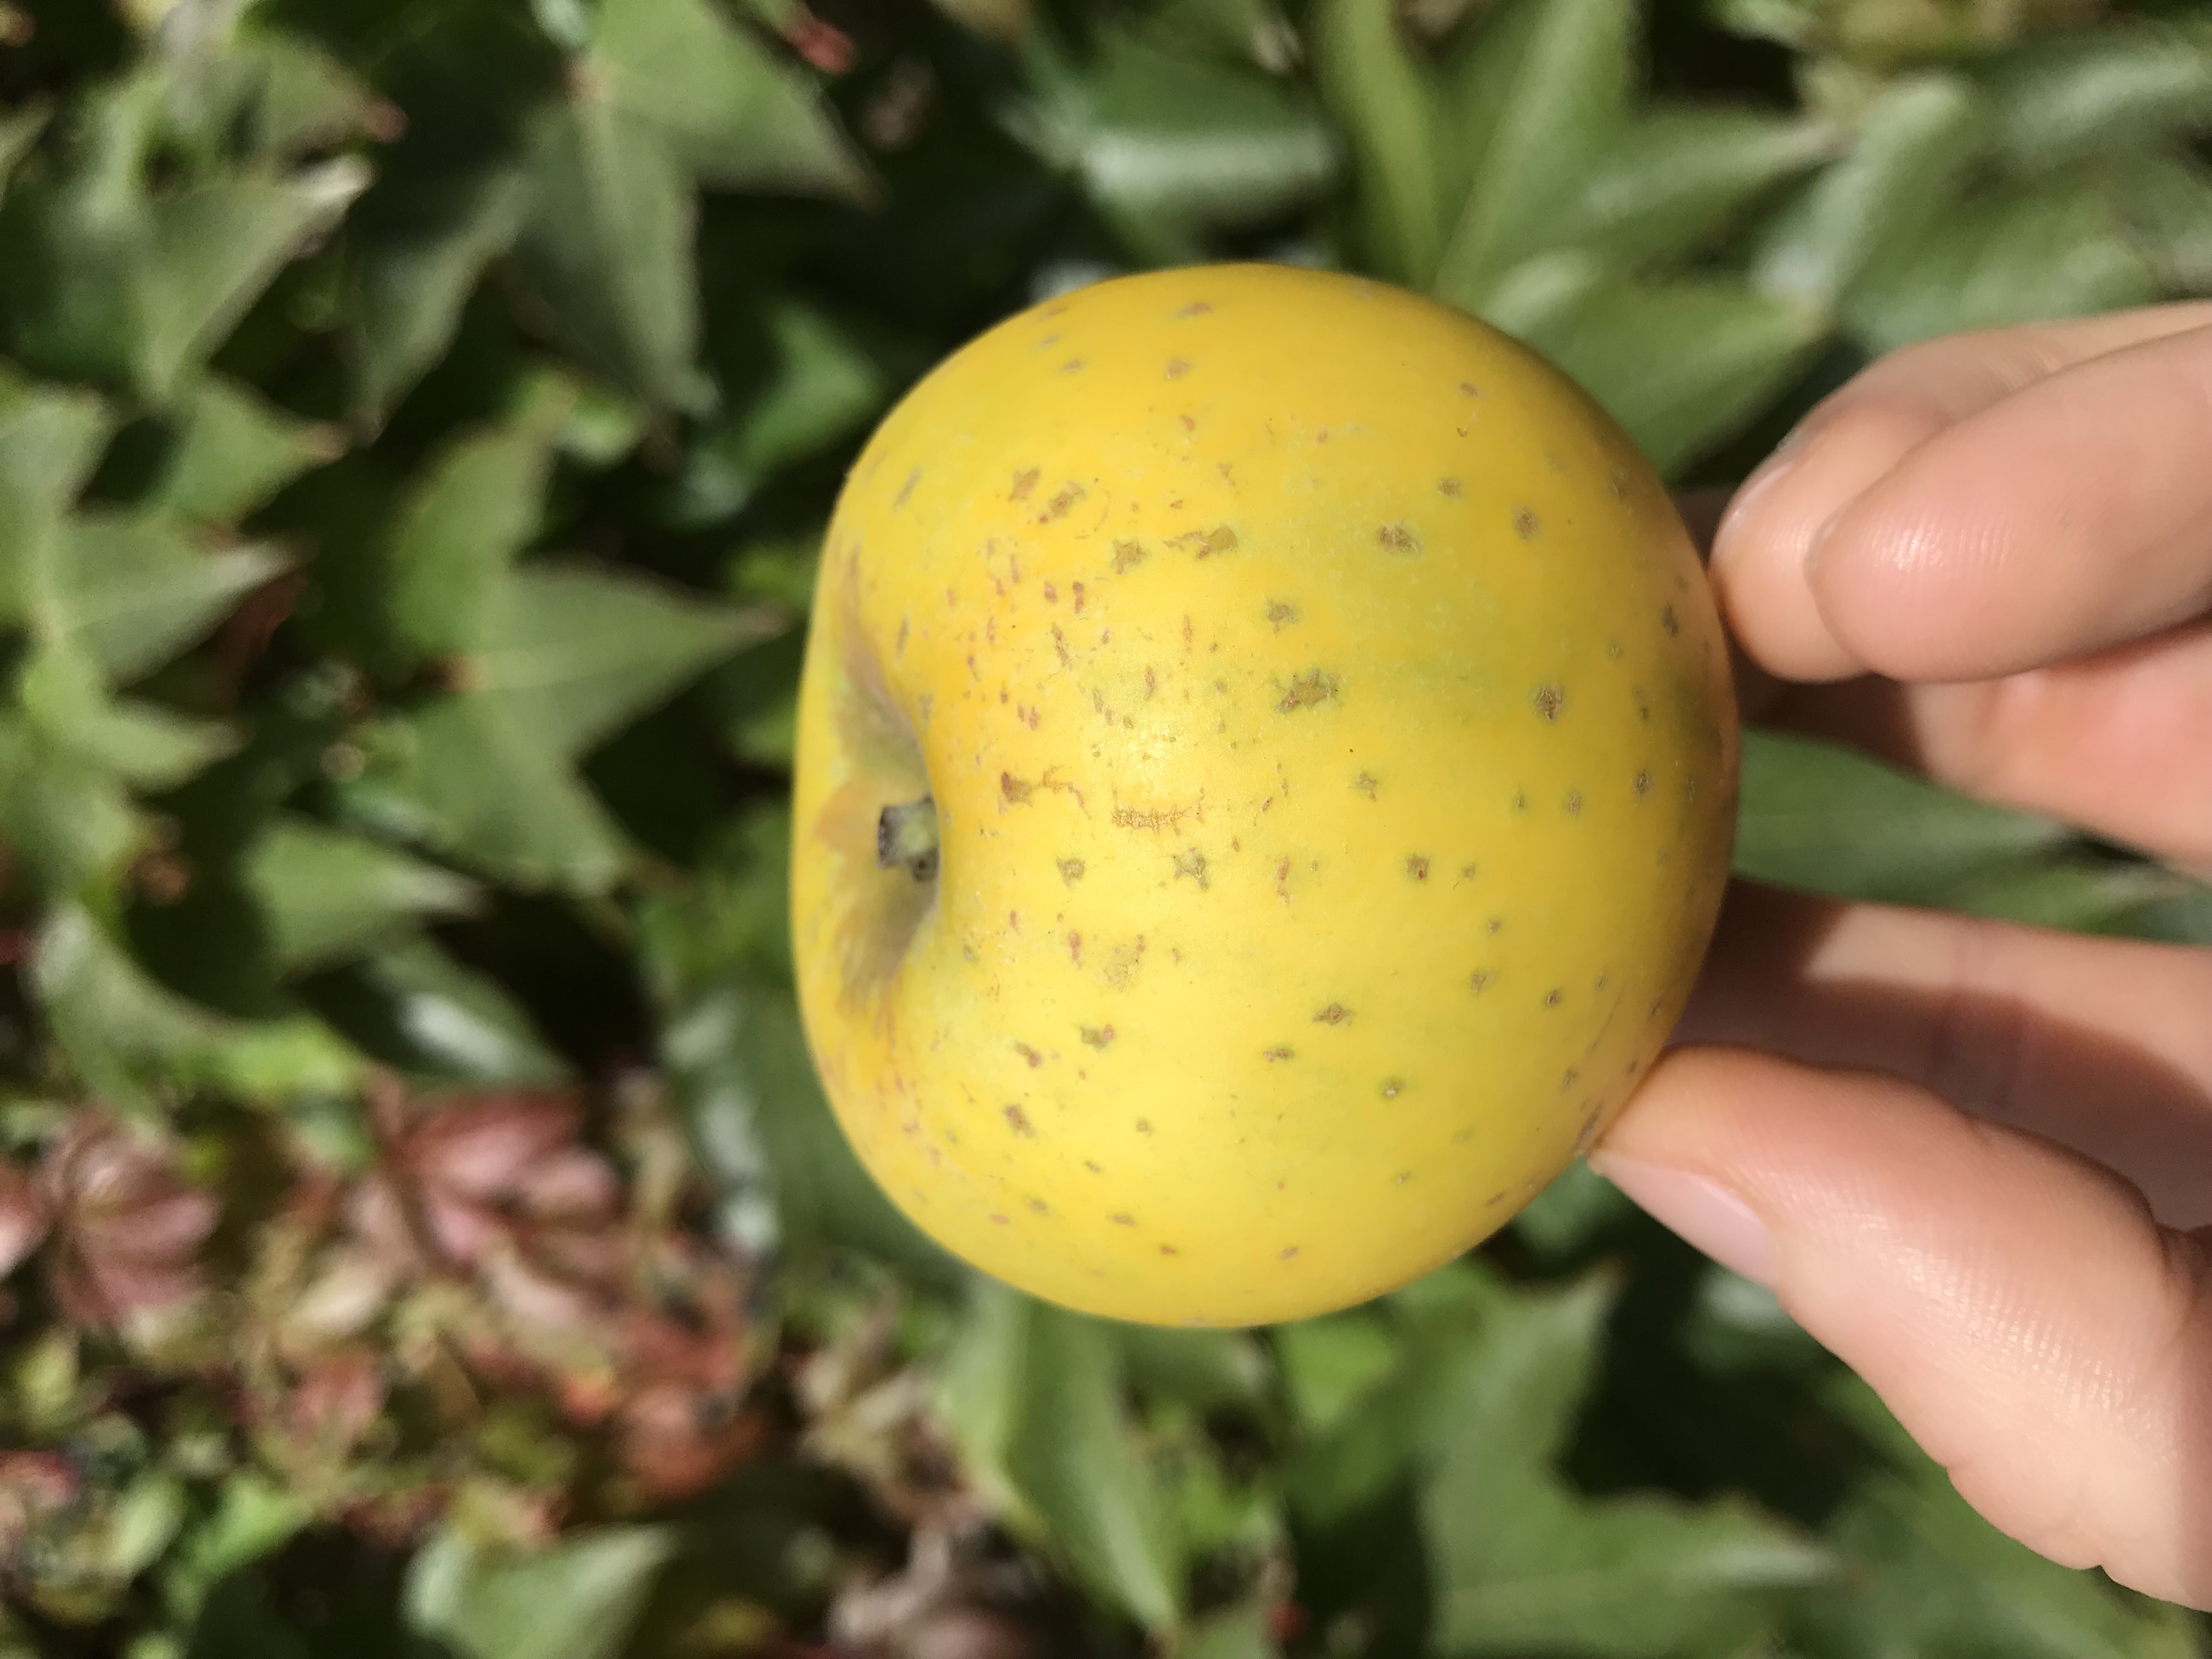 Apfelbaum  Ananasrenette